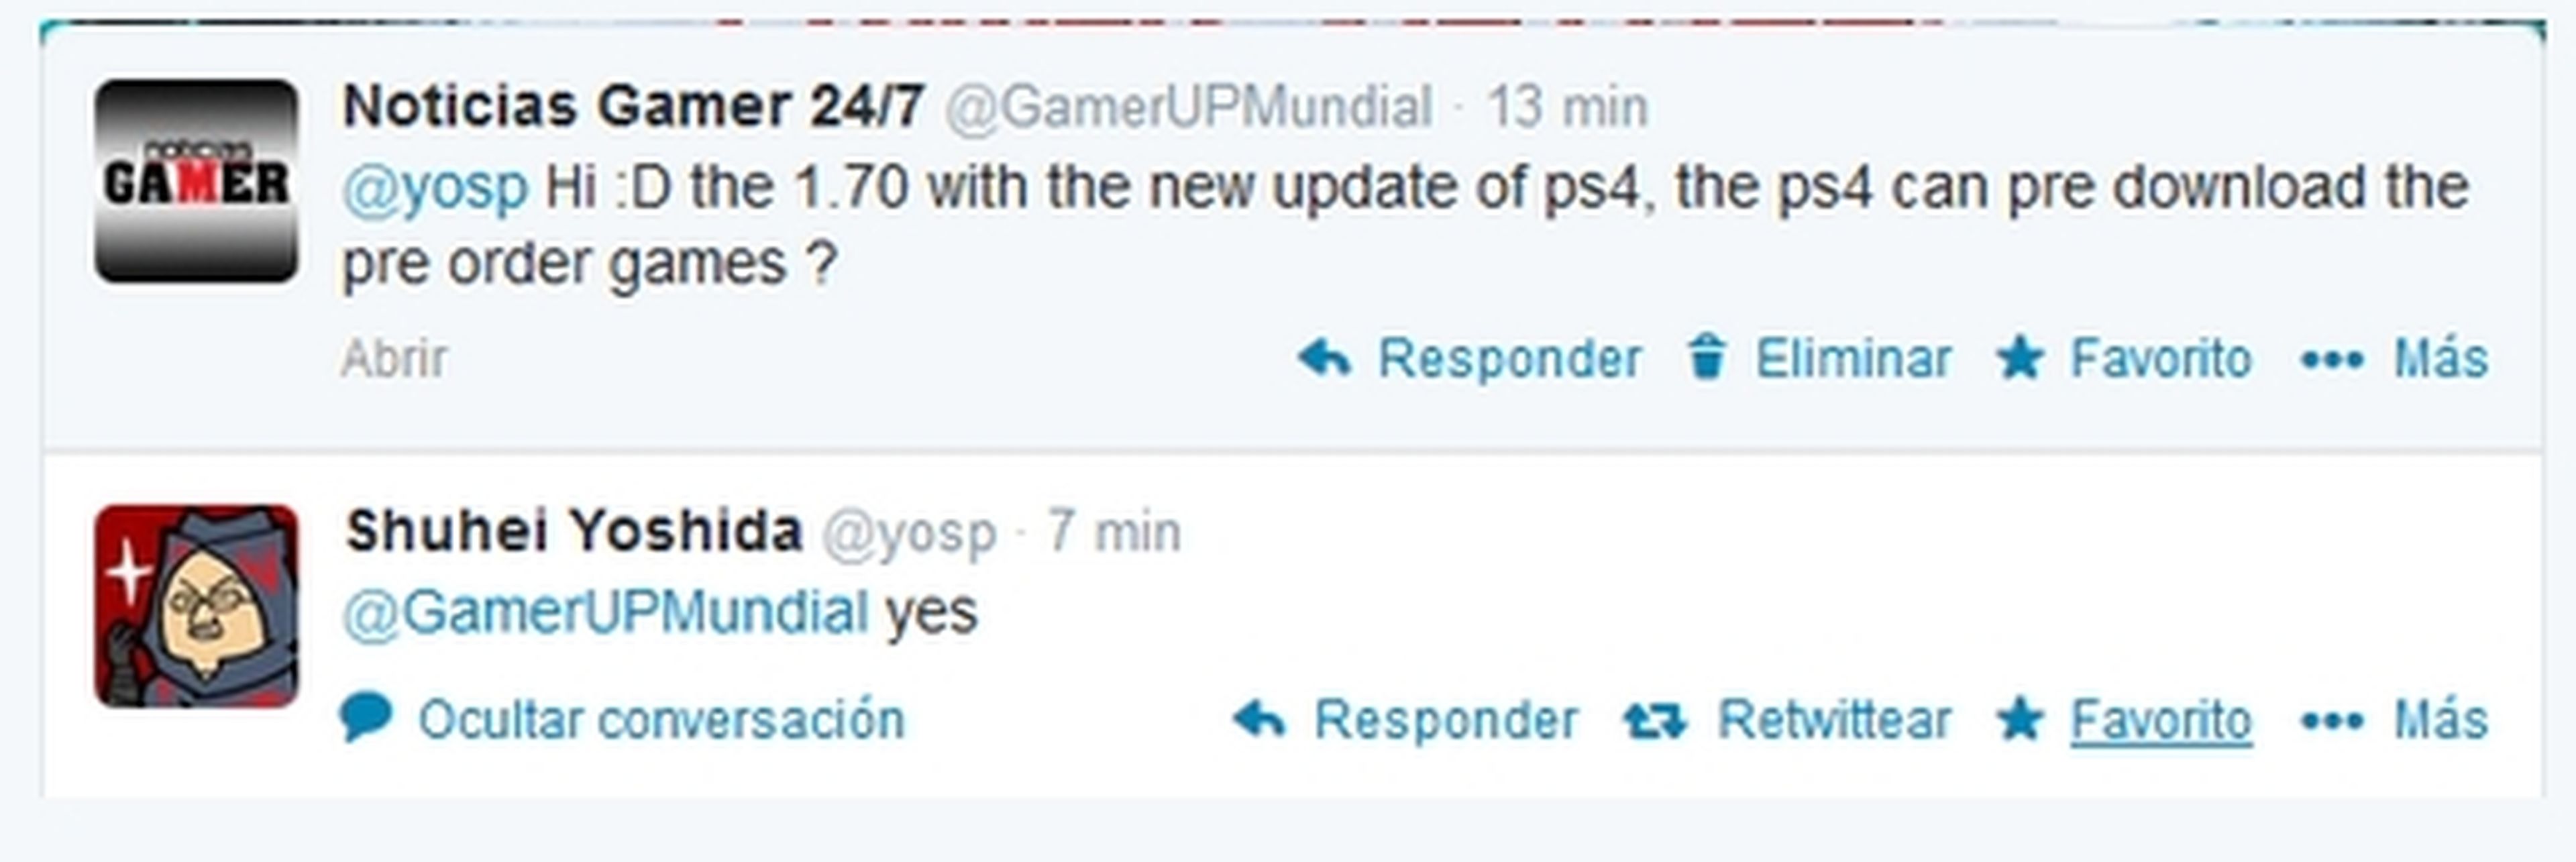 La actualización para PS4 llega el 30 de abril